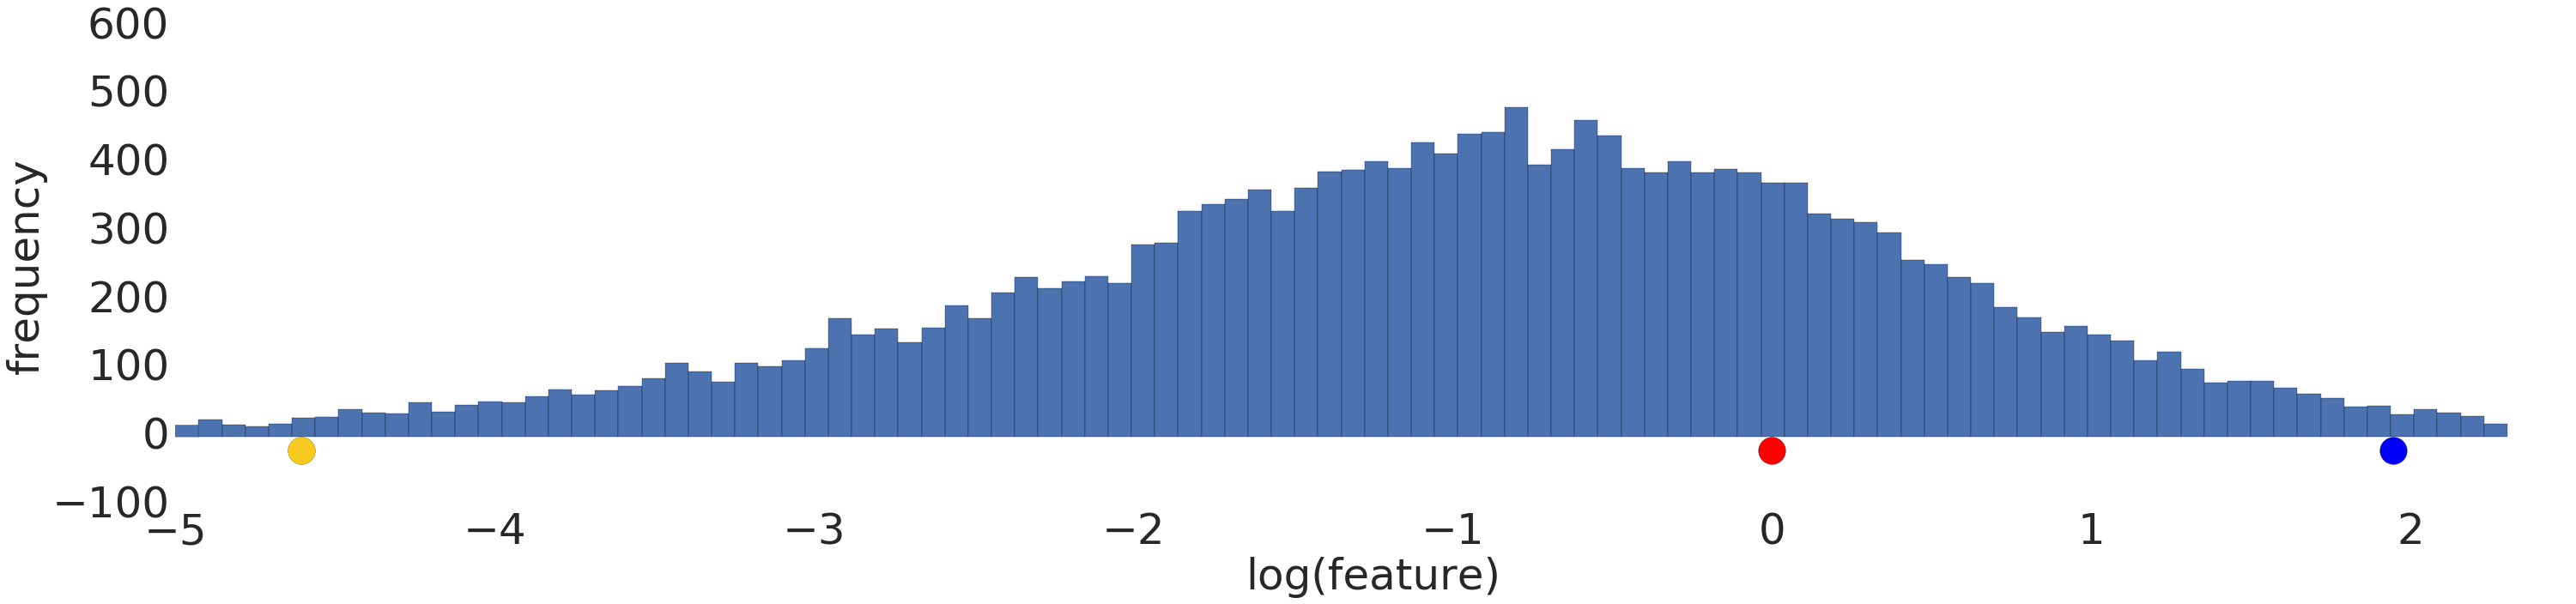 Một biểu đồ cho thấy mô hình phân phối thông thường (Gaussian)